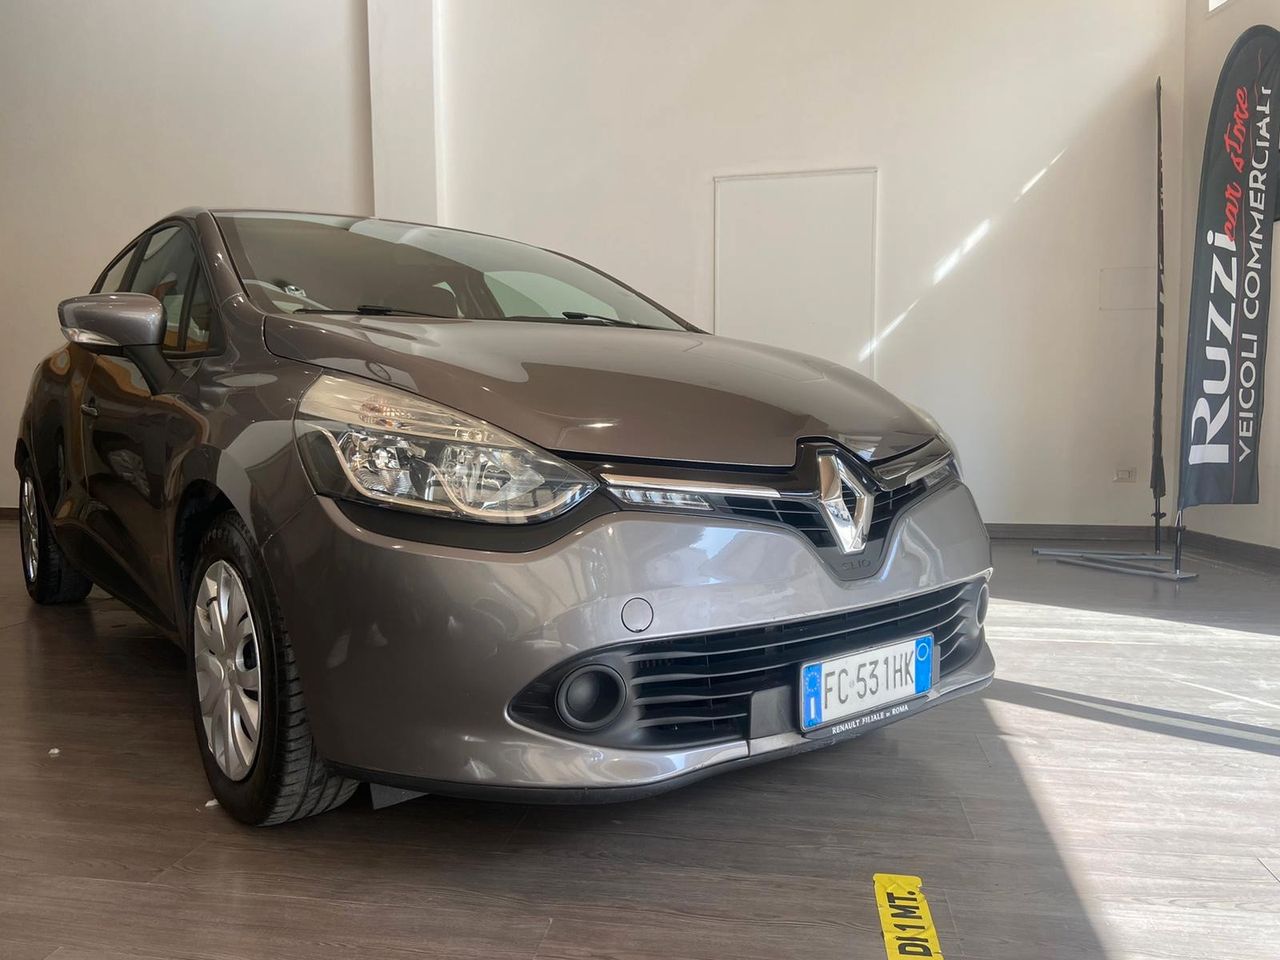 Renault Clio 1.5 dci 90 CV NEOPATENTATI